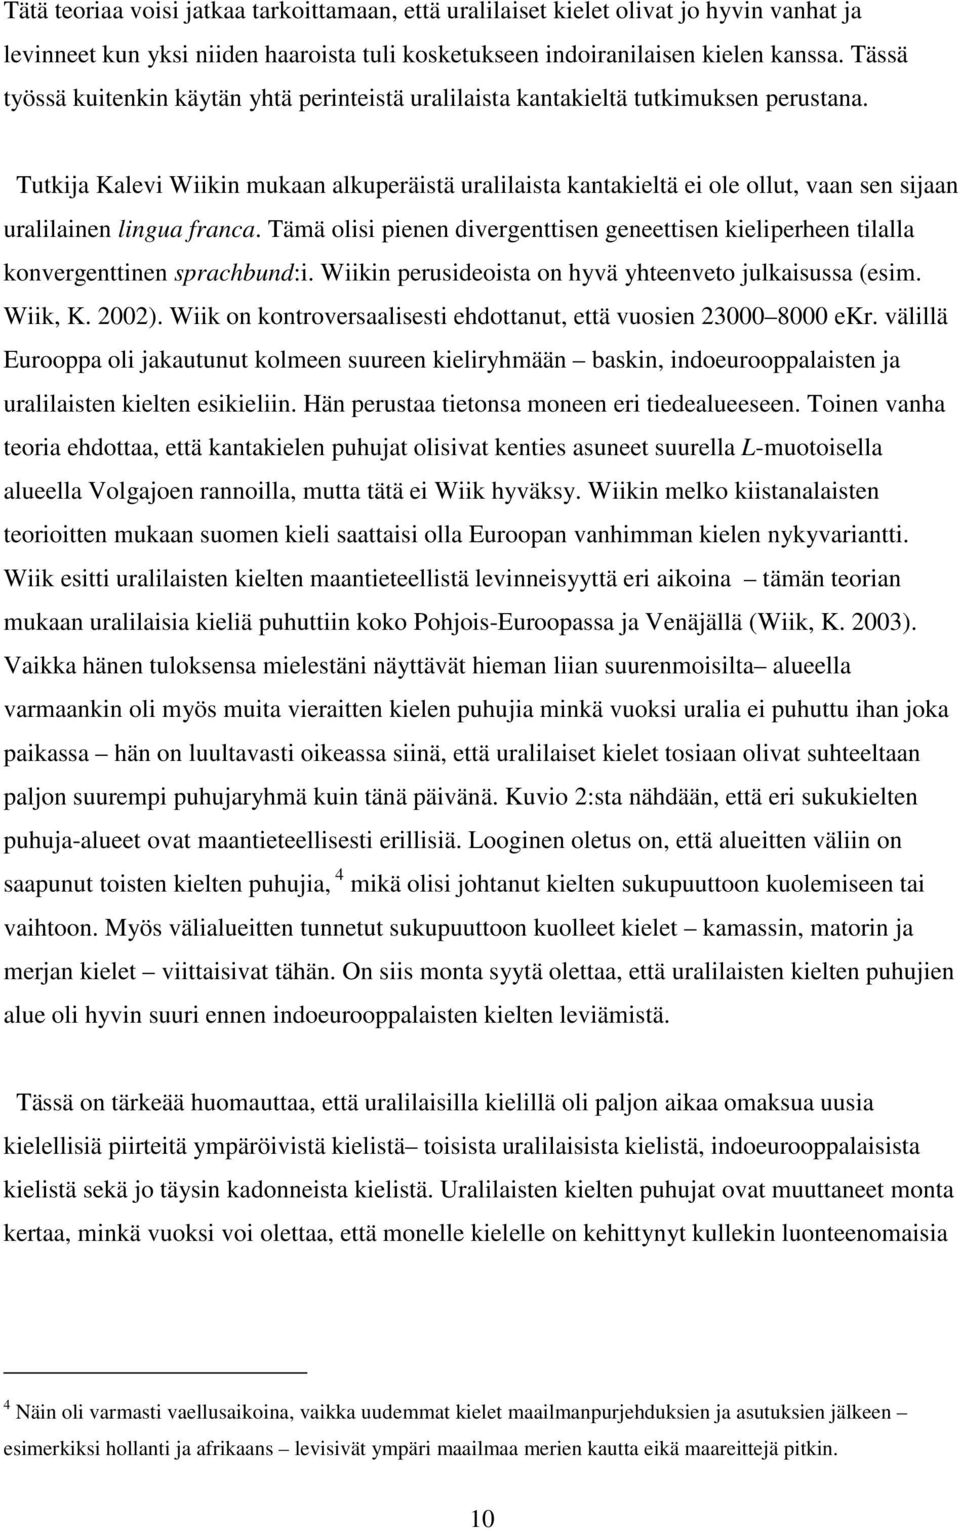 Tutkija Kalevi Wiikin mukaan alkuperäistä uralilaista kantakieltä ei ole ollut, vaan sen sijaan uralilainen lingua franca.